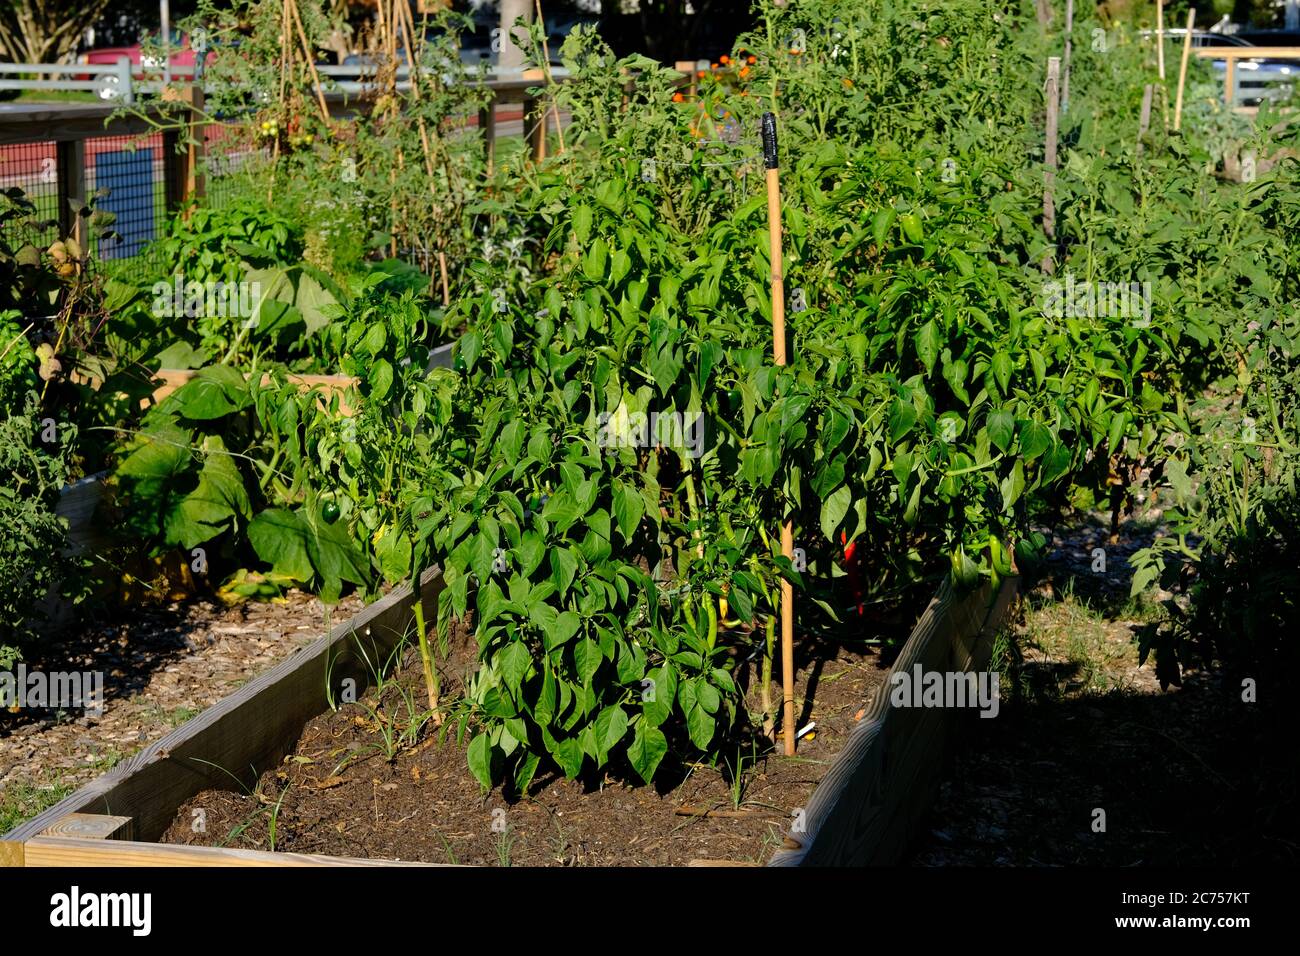 Urban Rain Garden Farm individuali trame in box di Kale, pomodori, Peperoni, banane, girasoli, decorazioni e piante assortite mantenute dai proprietari Foto Stock